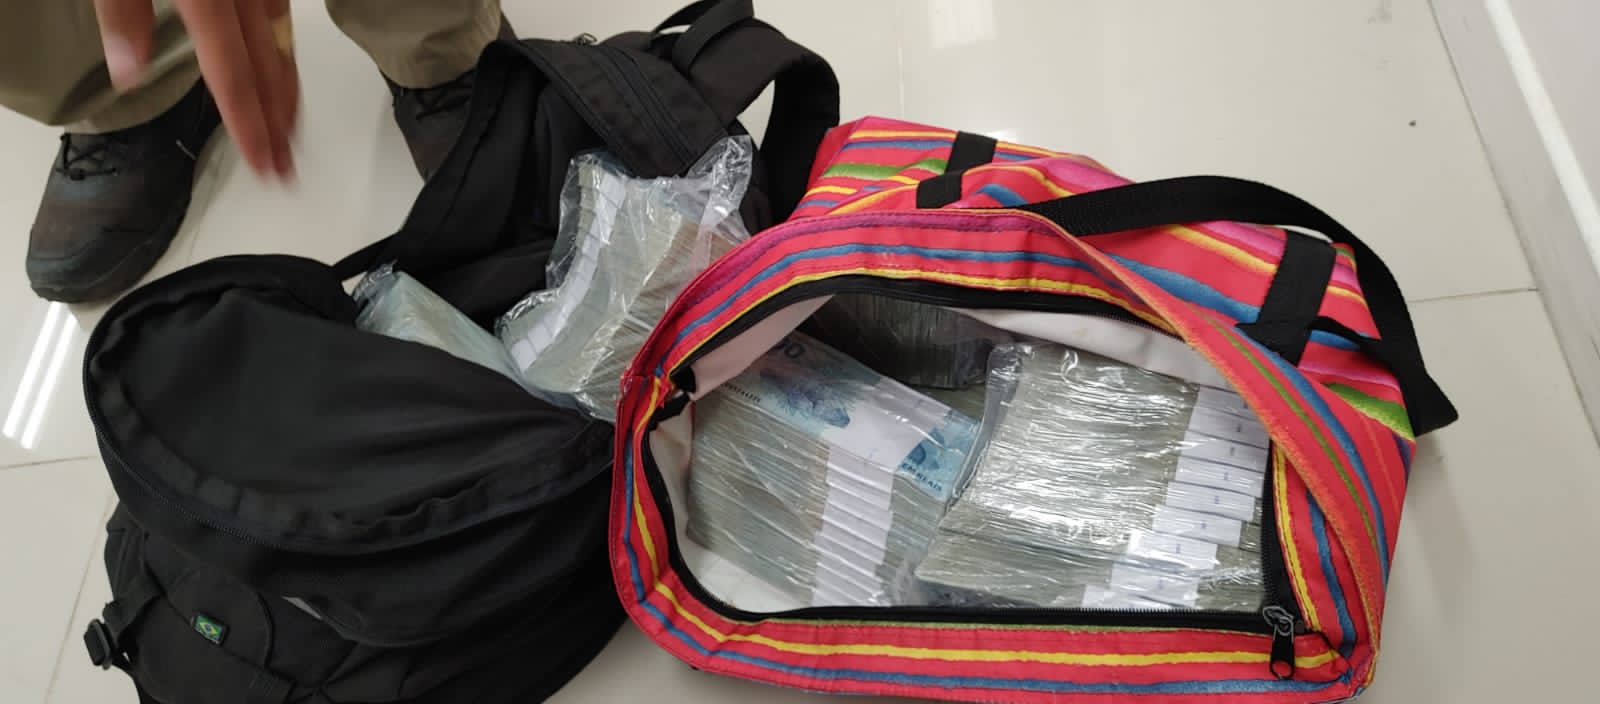 Polícia apreende R$ 1 milhão de dinheiro lavado